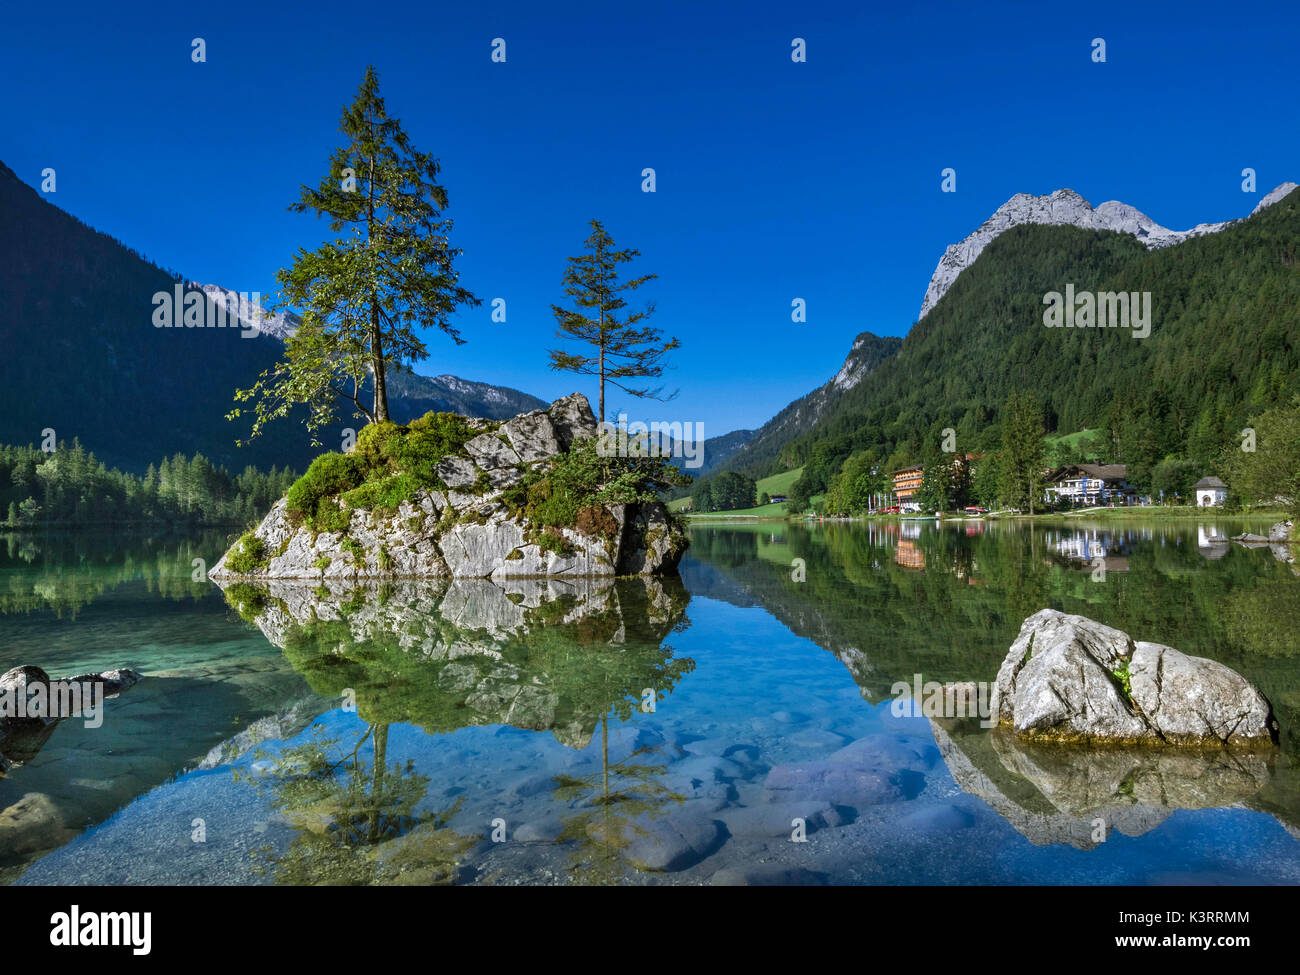 Vista del Lago Hintersee cerca de Ramsau en el Parque Nacional Berchtesgaden, Baviera, la Alta Baviera, Alemania, Europa Foto de stock